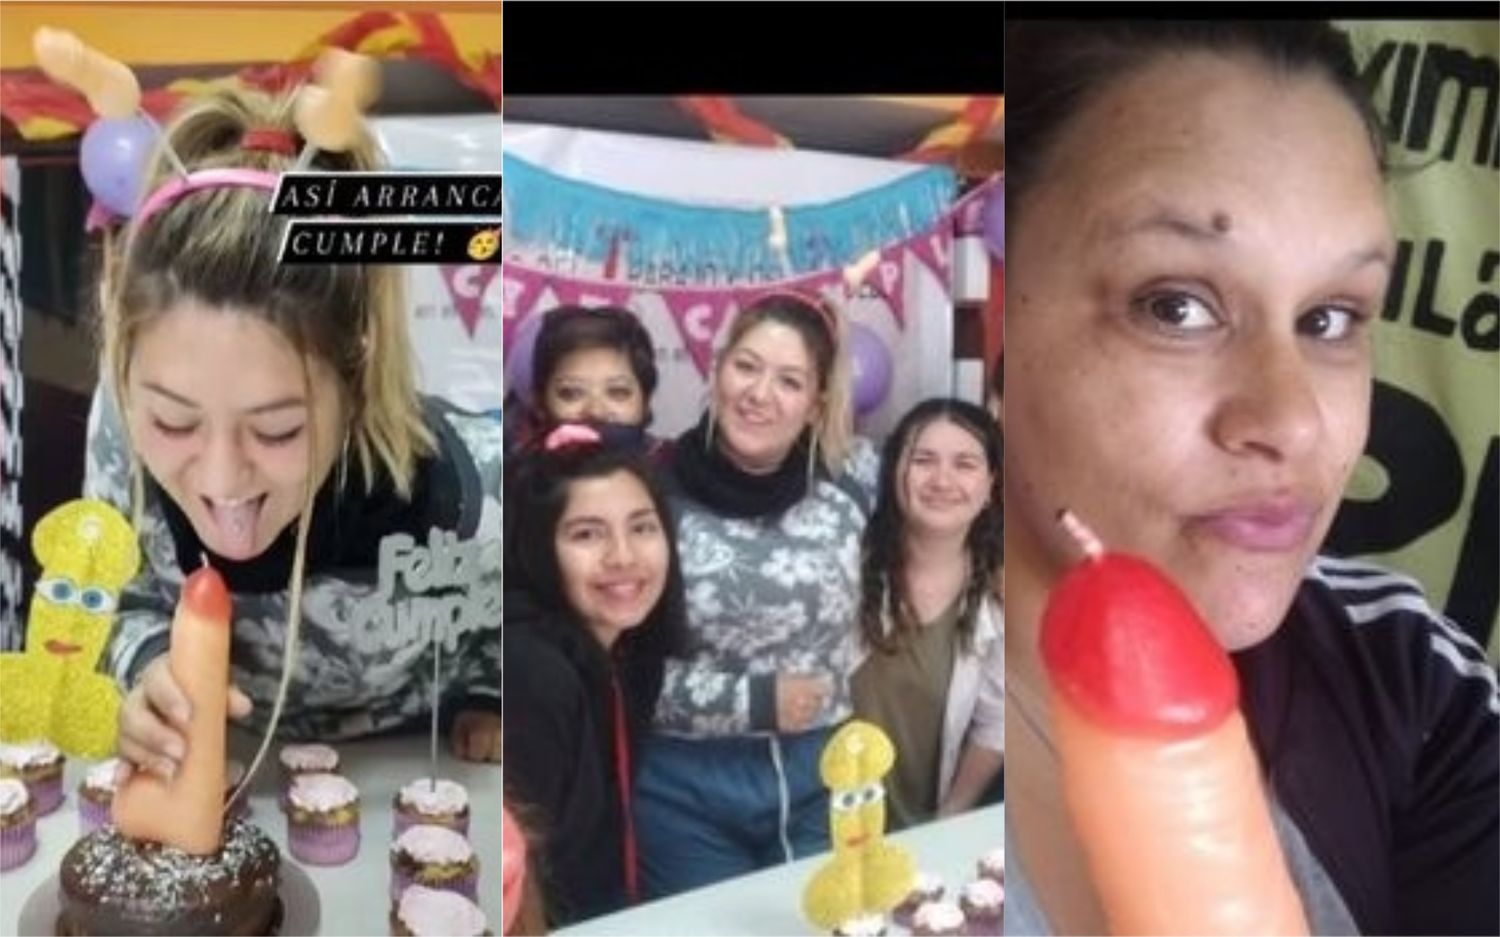 Escándalo en Pigüé: Candidata de Todos festejó un cumpleaños con juguetes sexuales en un merendero infantil